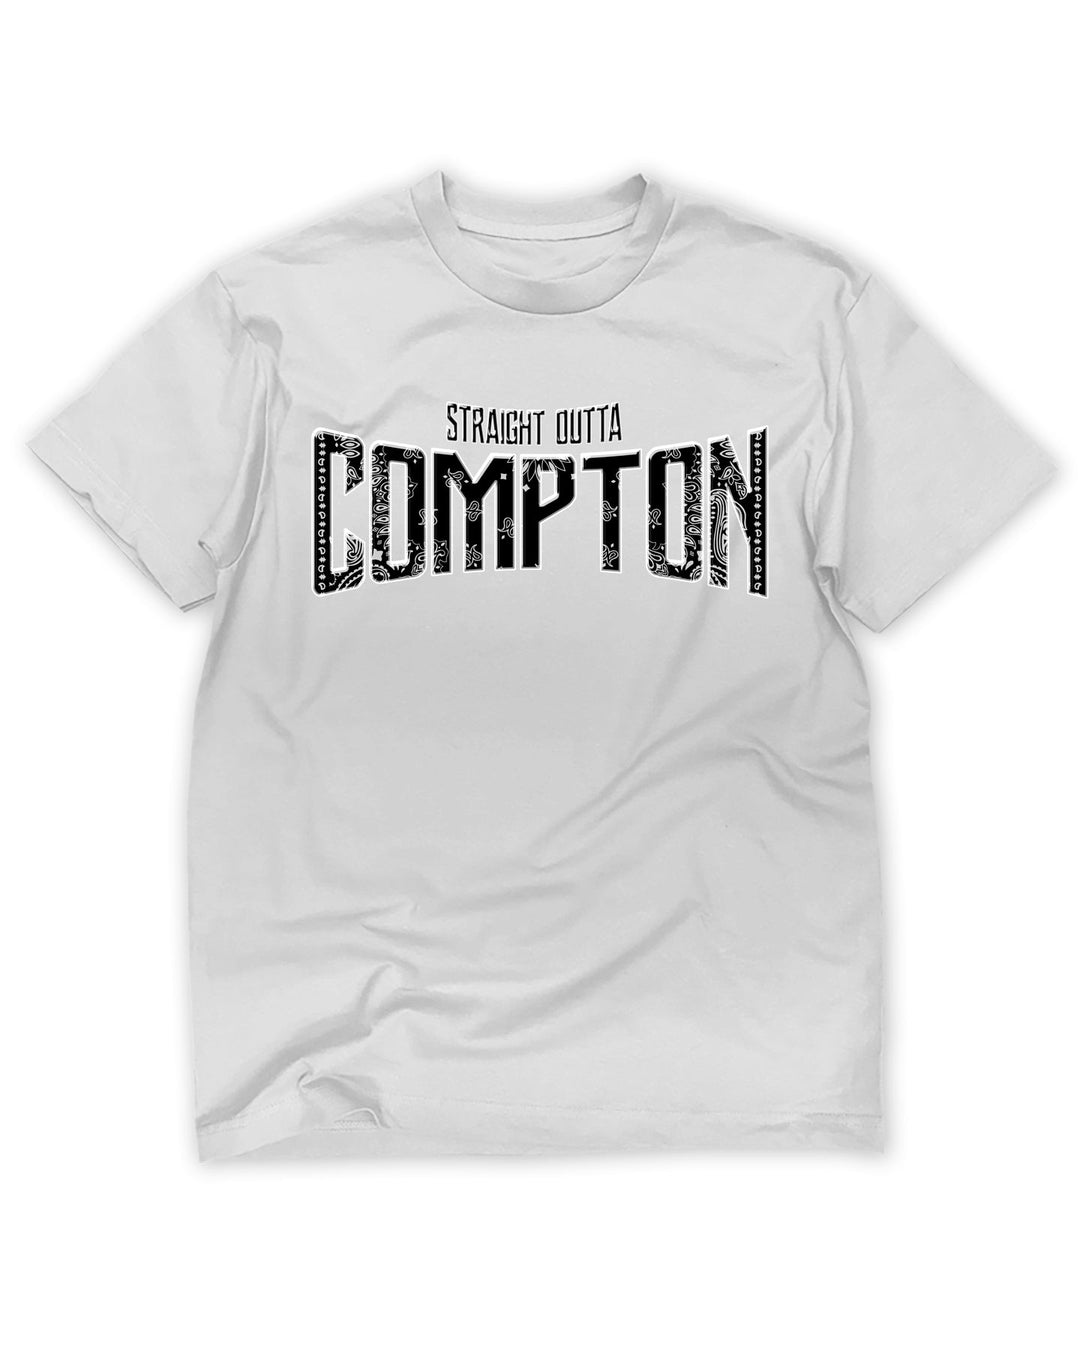 Straight Outta Compton Tee - White